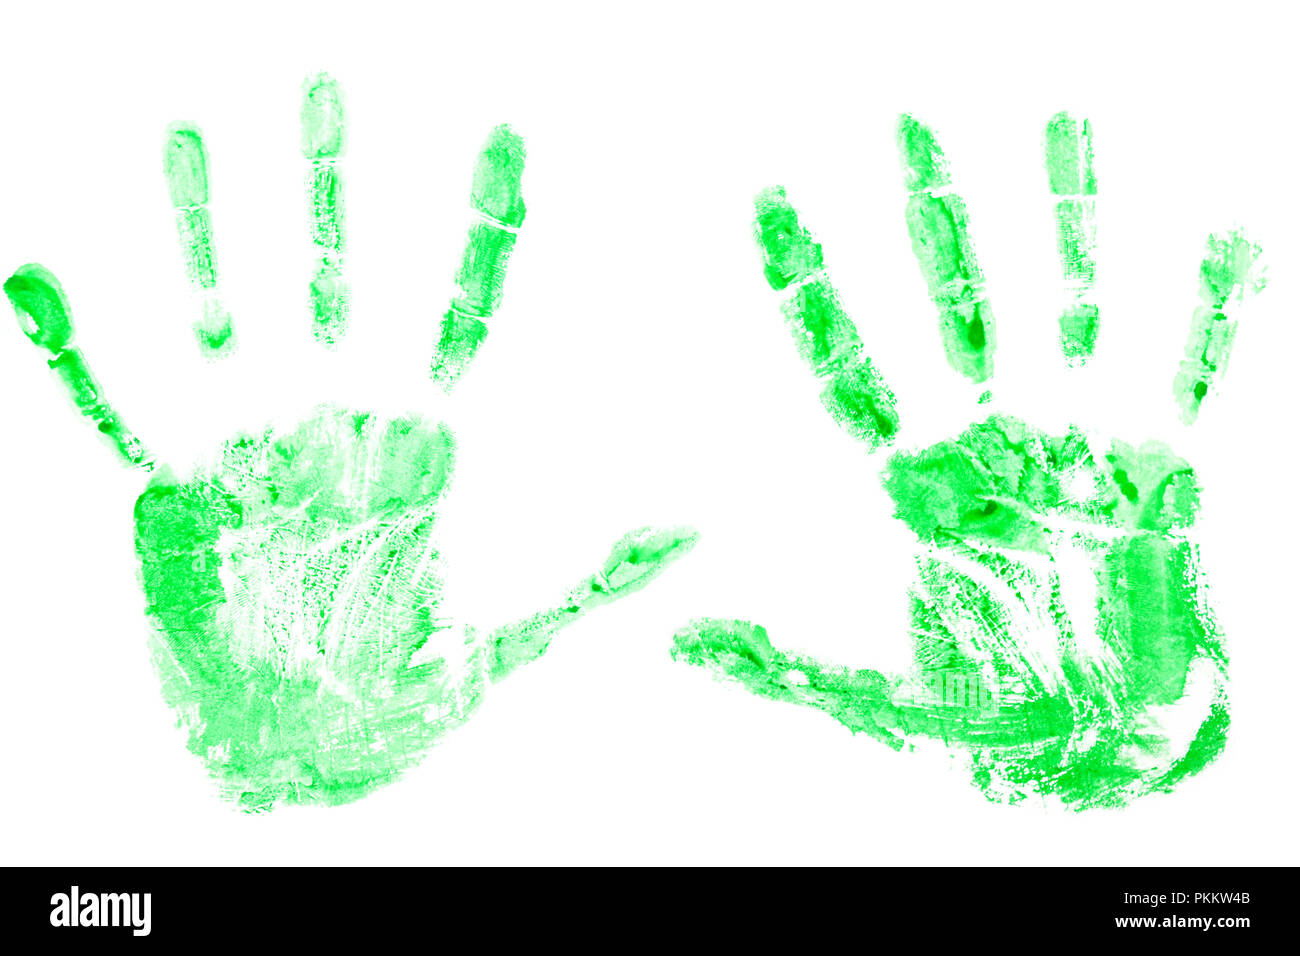 Imprime de peinture verte sur les mains, paumes sur un fond blanc.Concept de l'écologie, la protection de la nature Banque D'Images